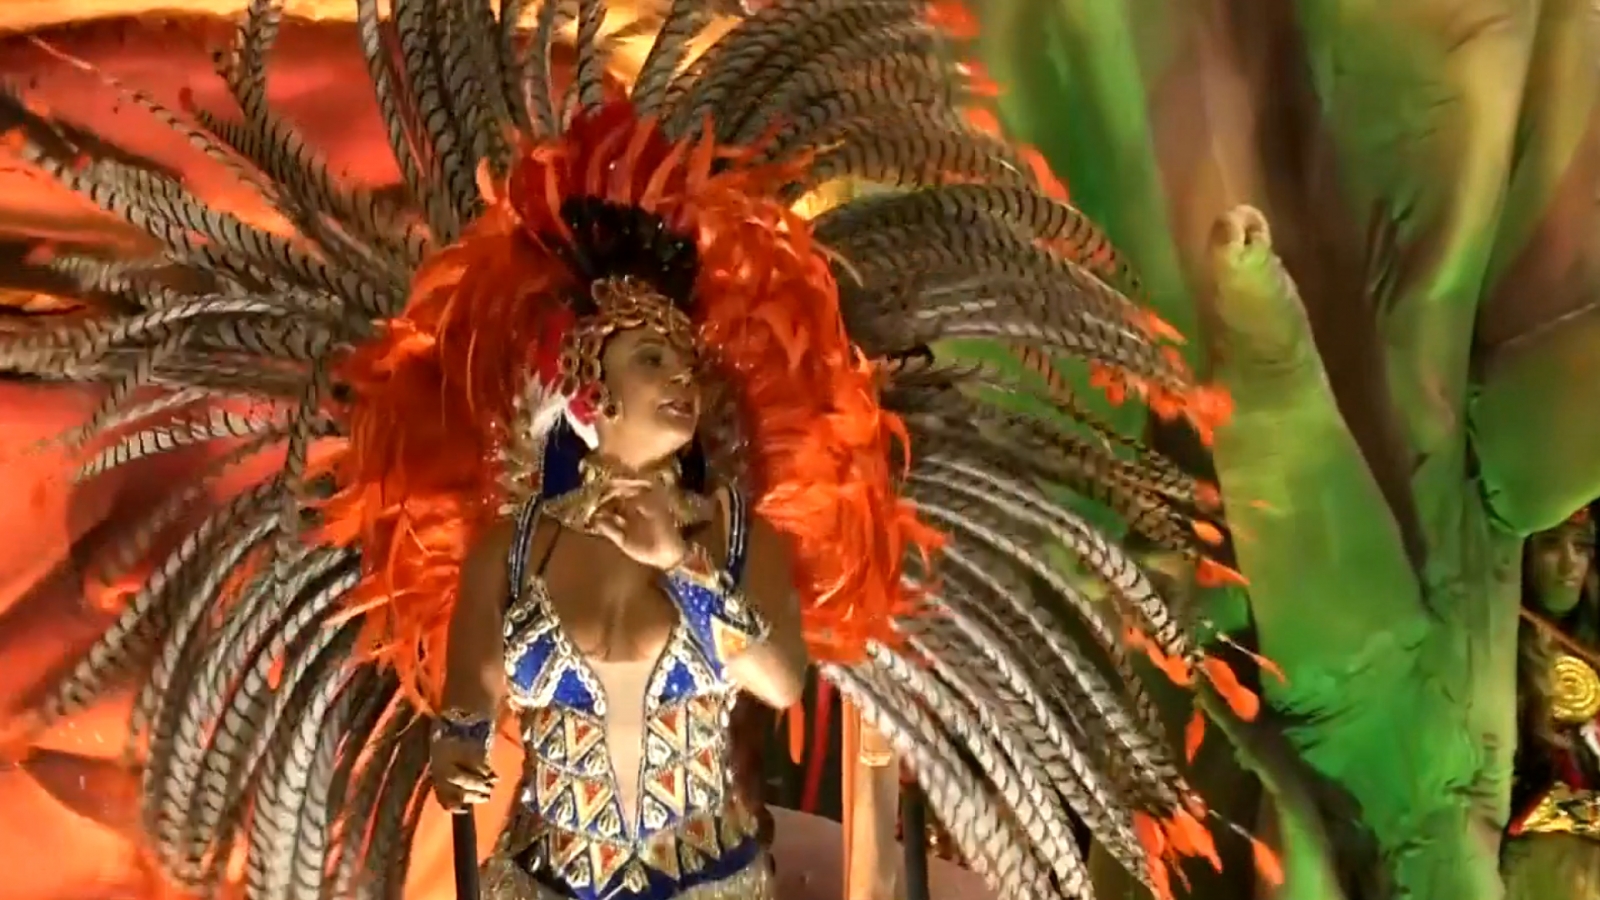 Colourful carnival season begins in Rio de Janeiro